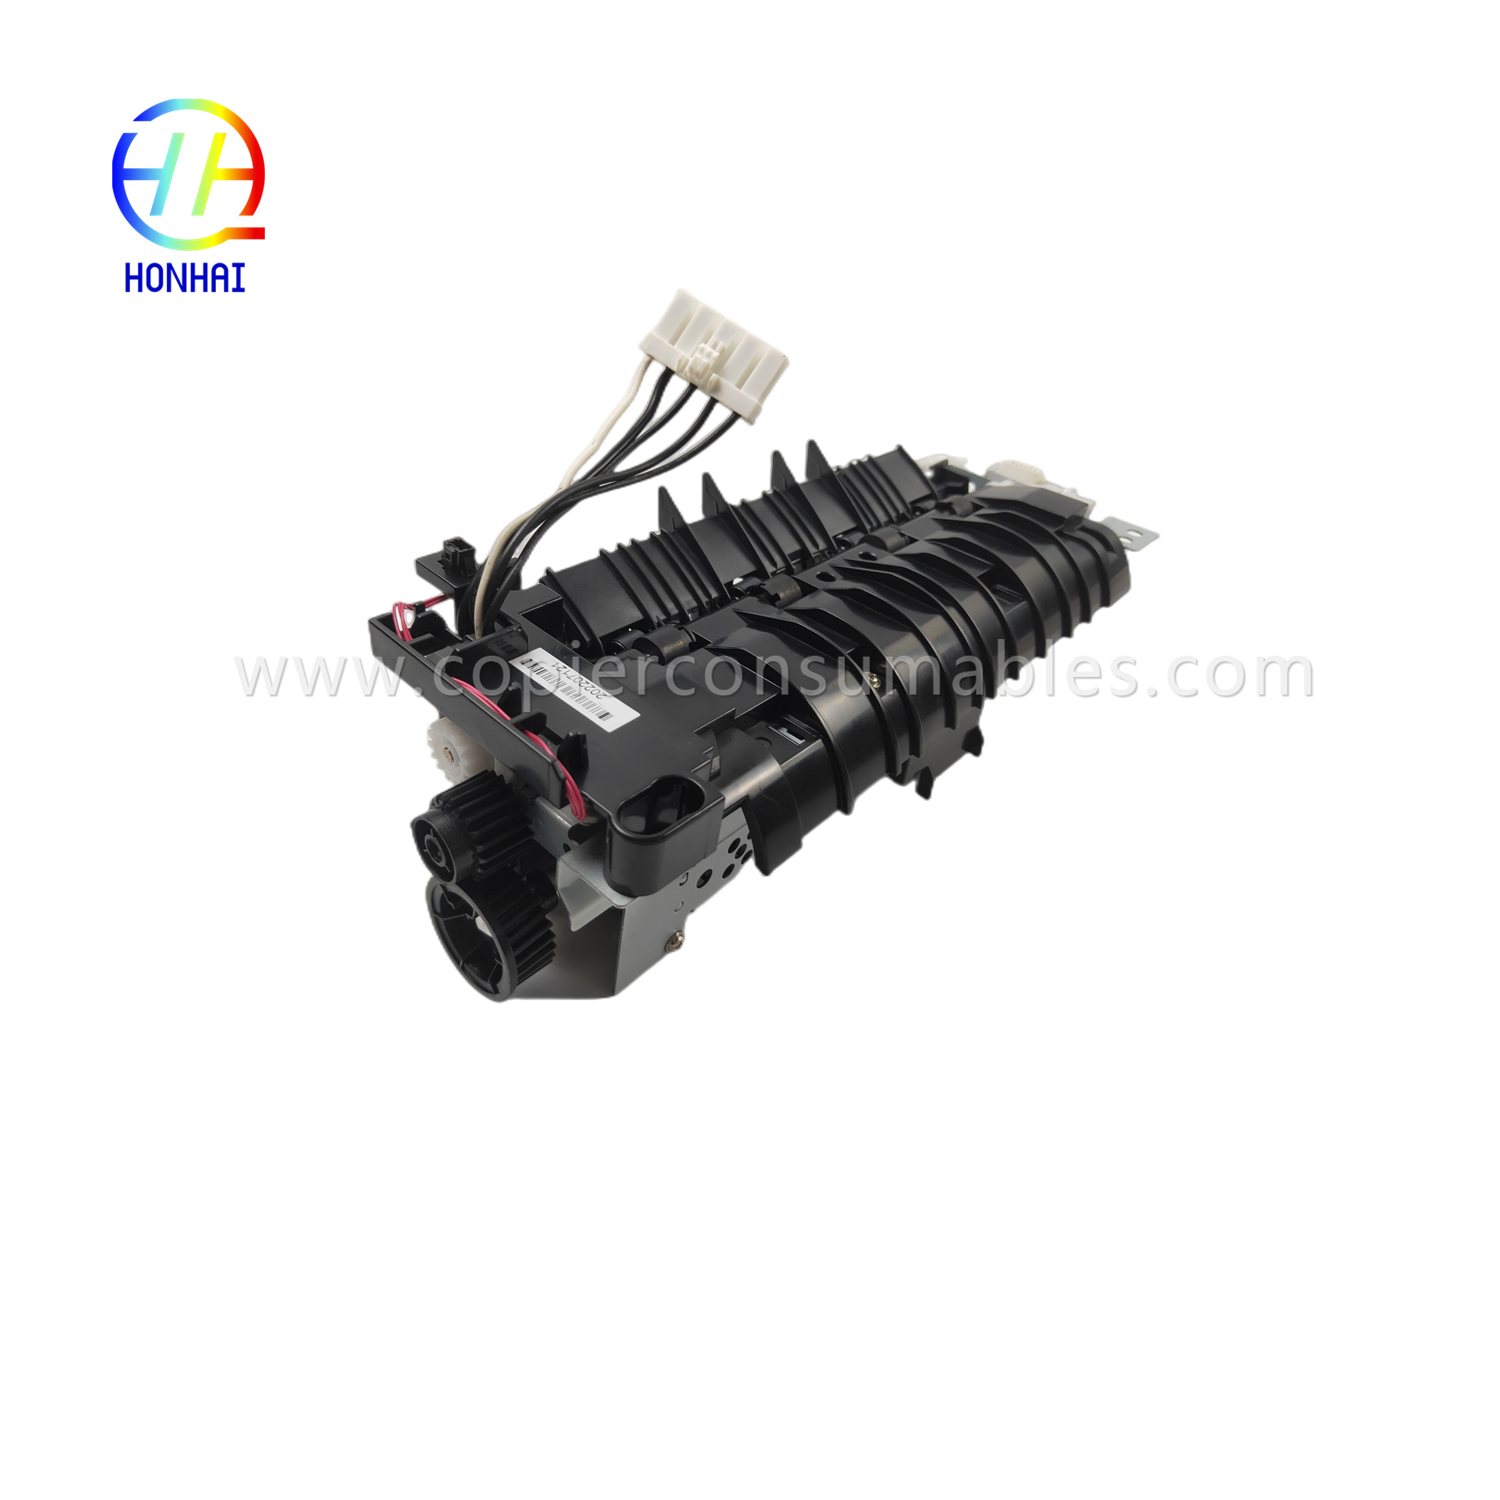 https://www.copierhonhaitech.com/fuser-assembly-220v-japan-for-hp-521-525-m521-m525-rm1-8508-rm1-8508-000-fuser-unit-2-product/